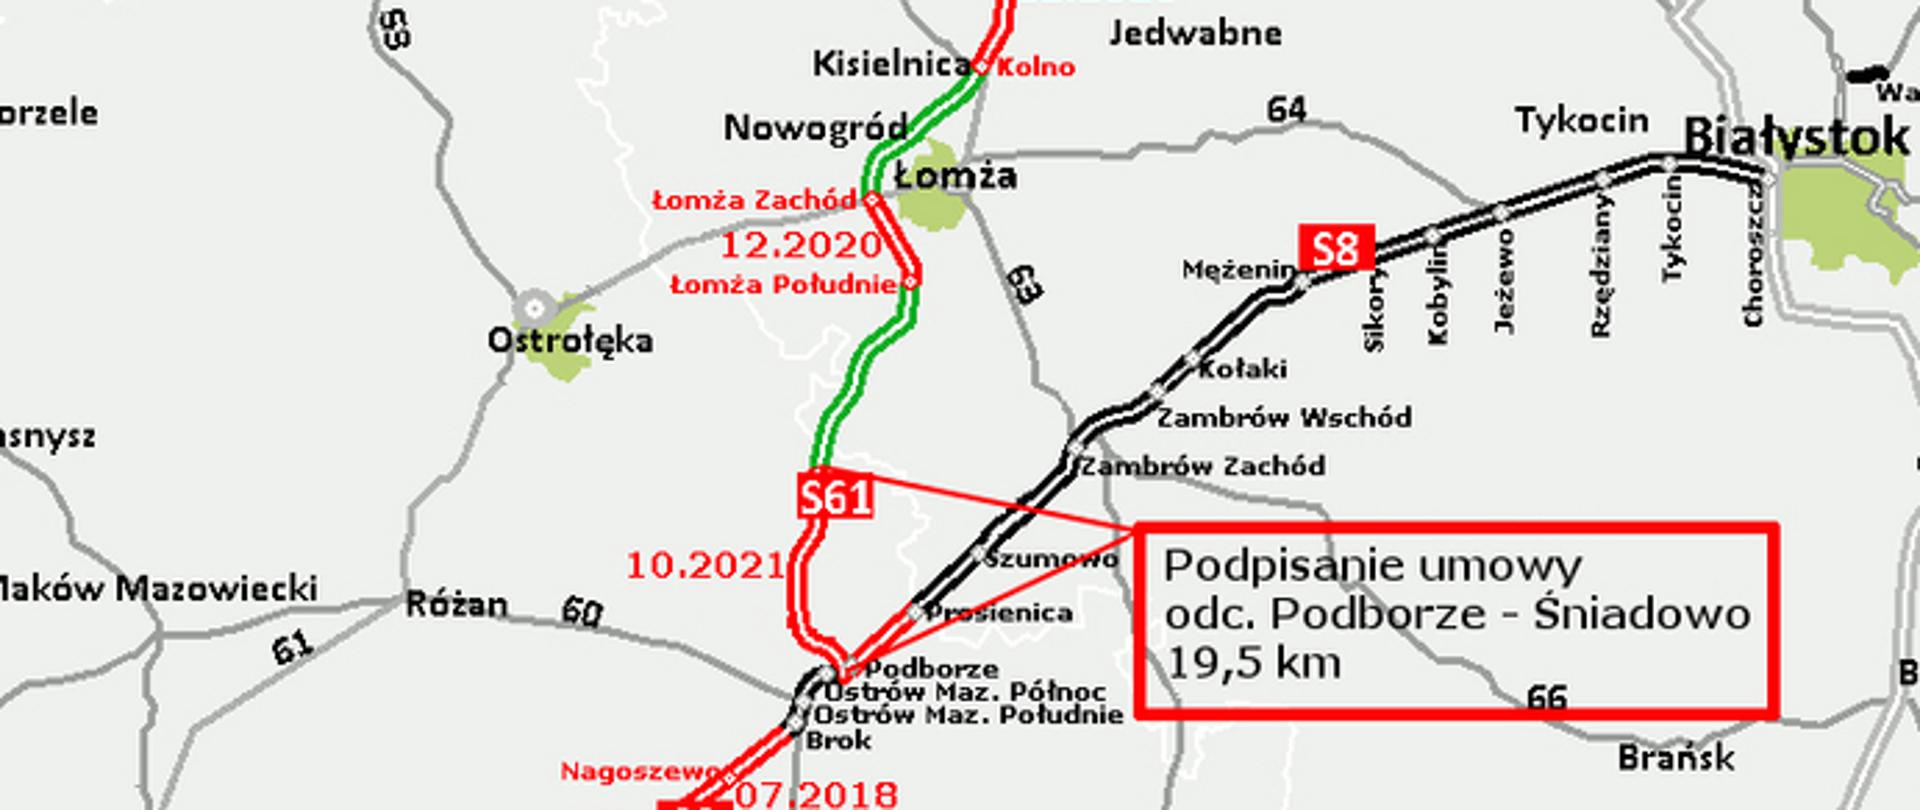 Via Baltica na terytorium Polski (S8 i S61)